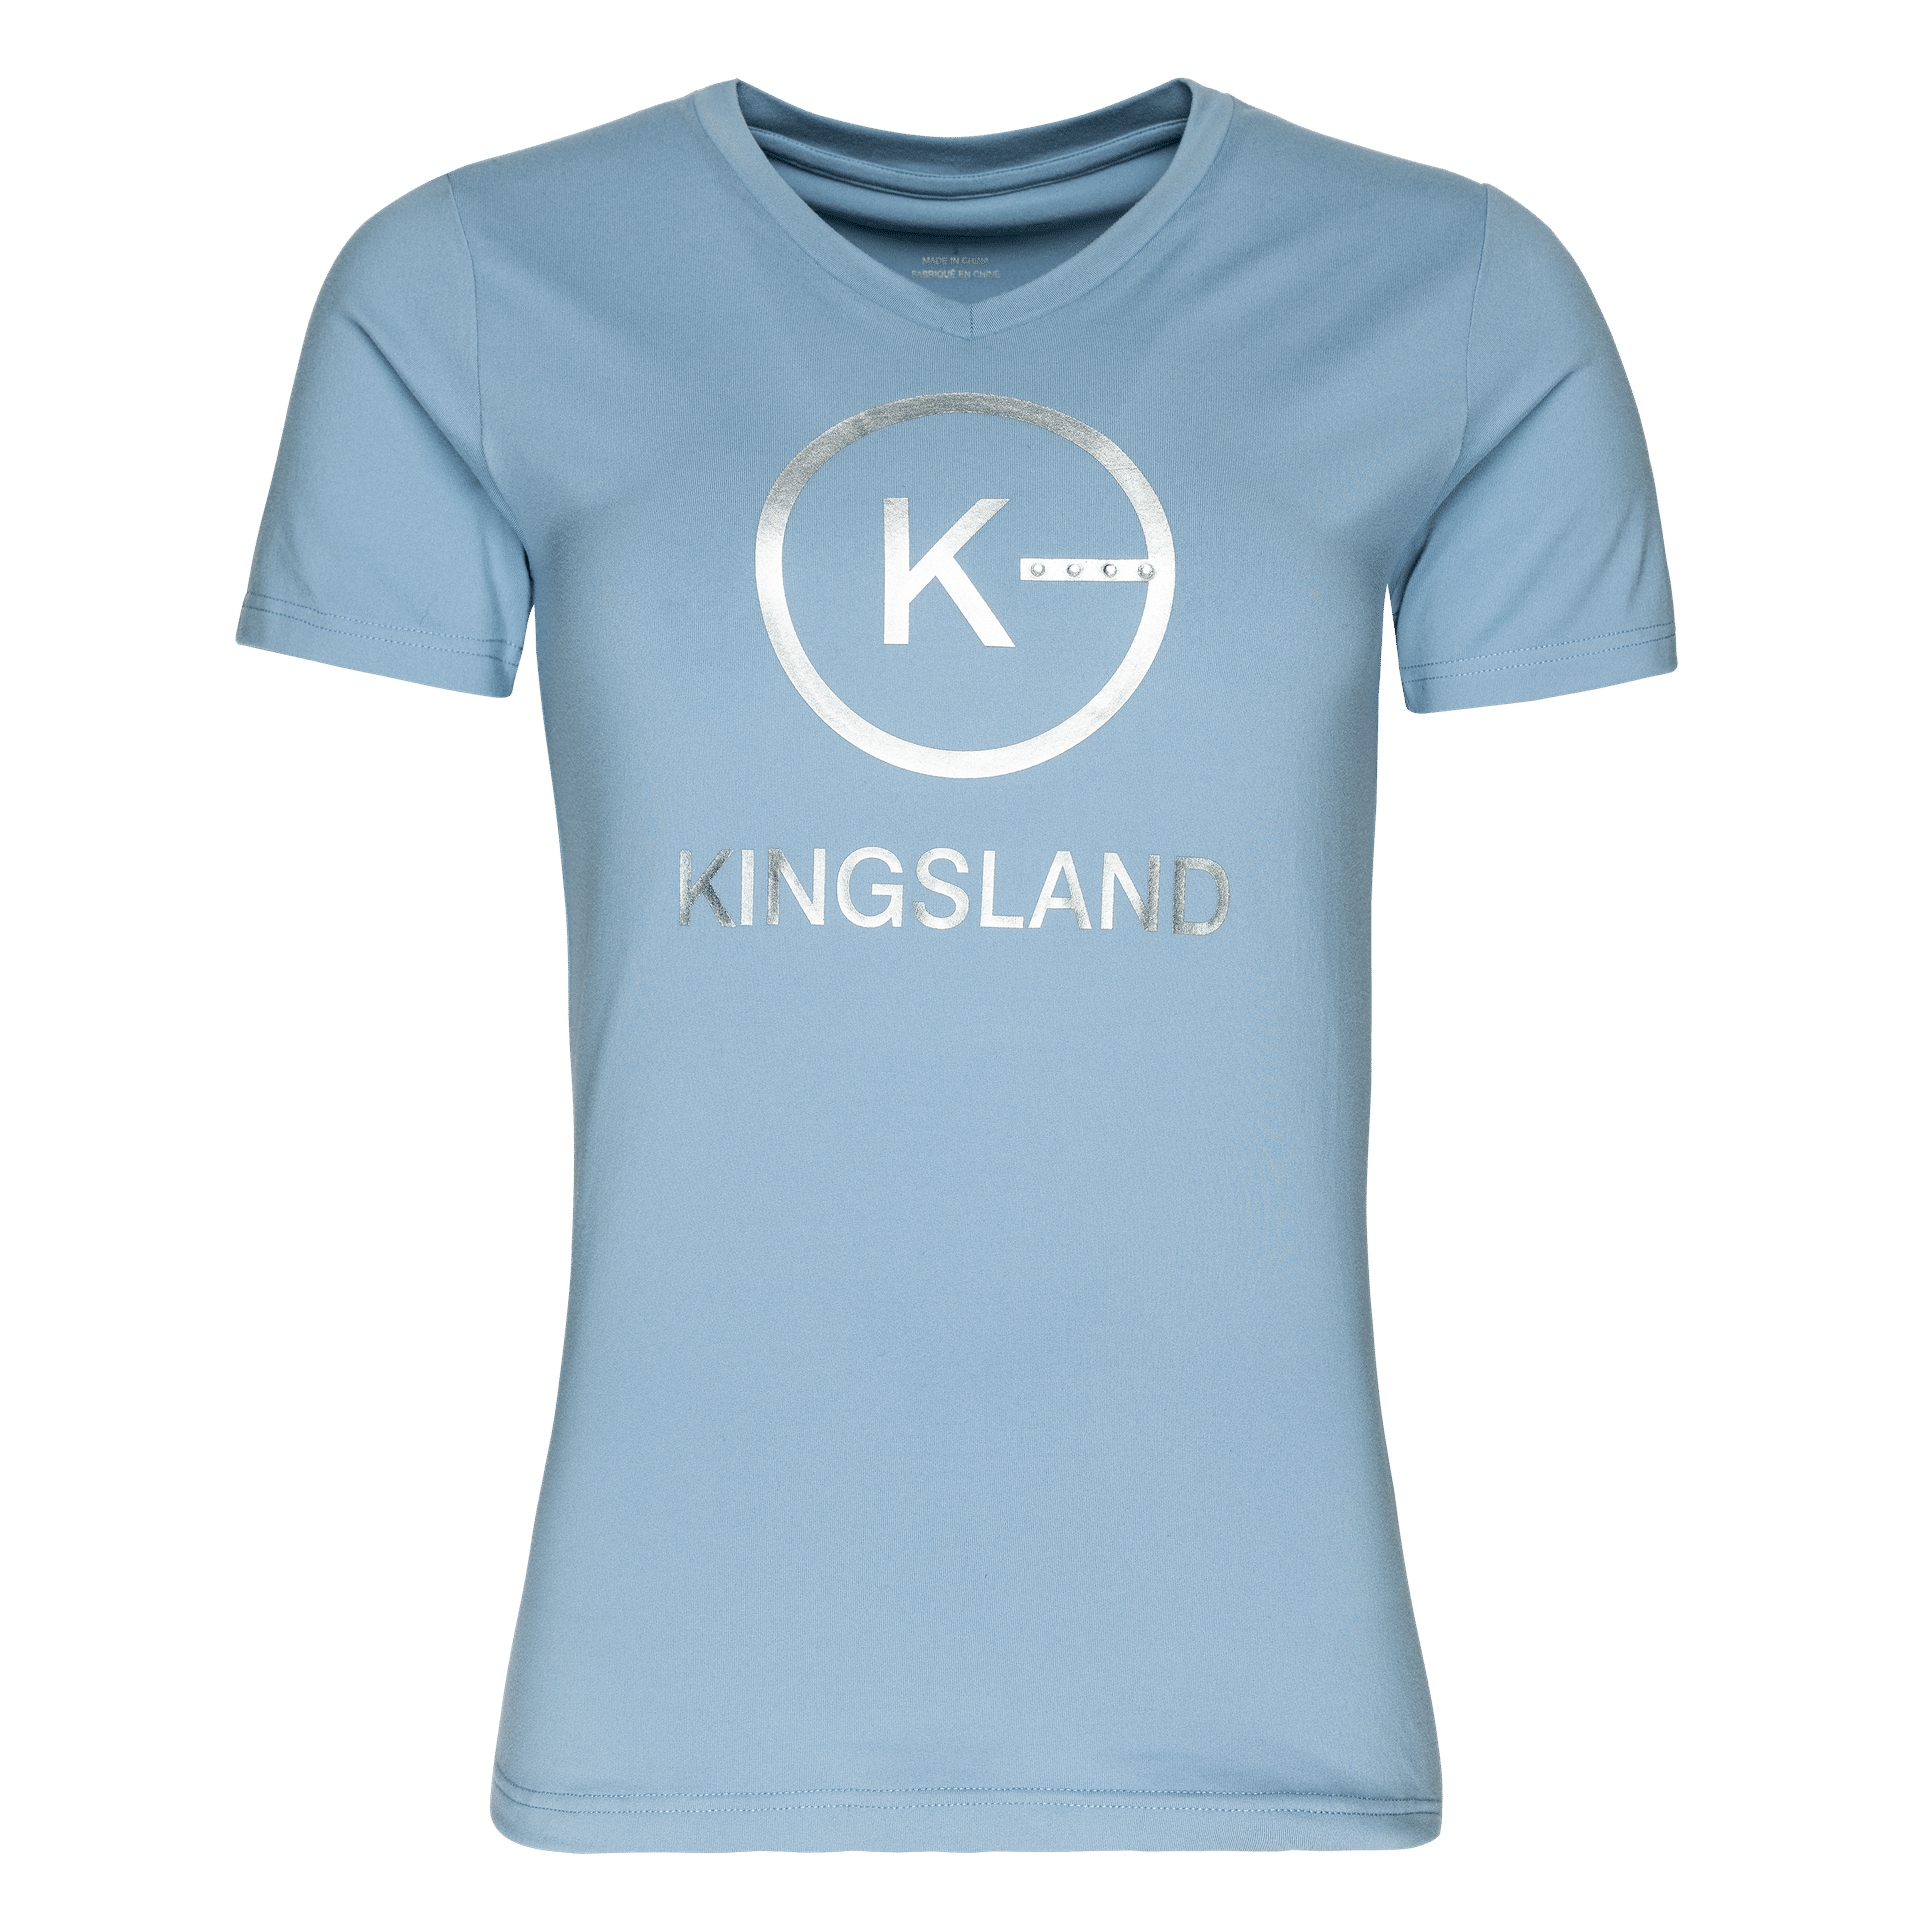 Sellerie - T-shirt kl helena kingsland - Dame